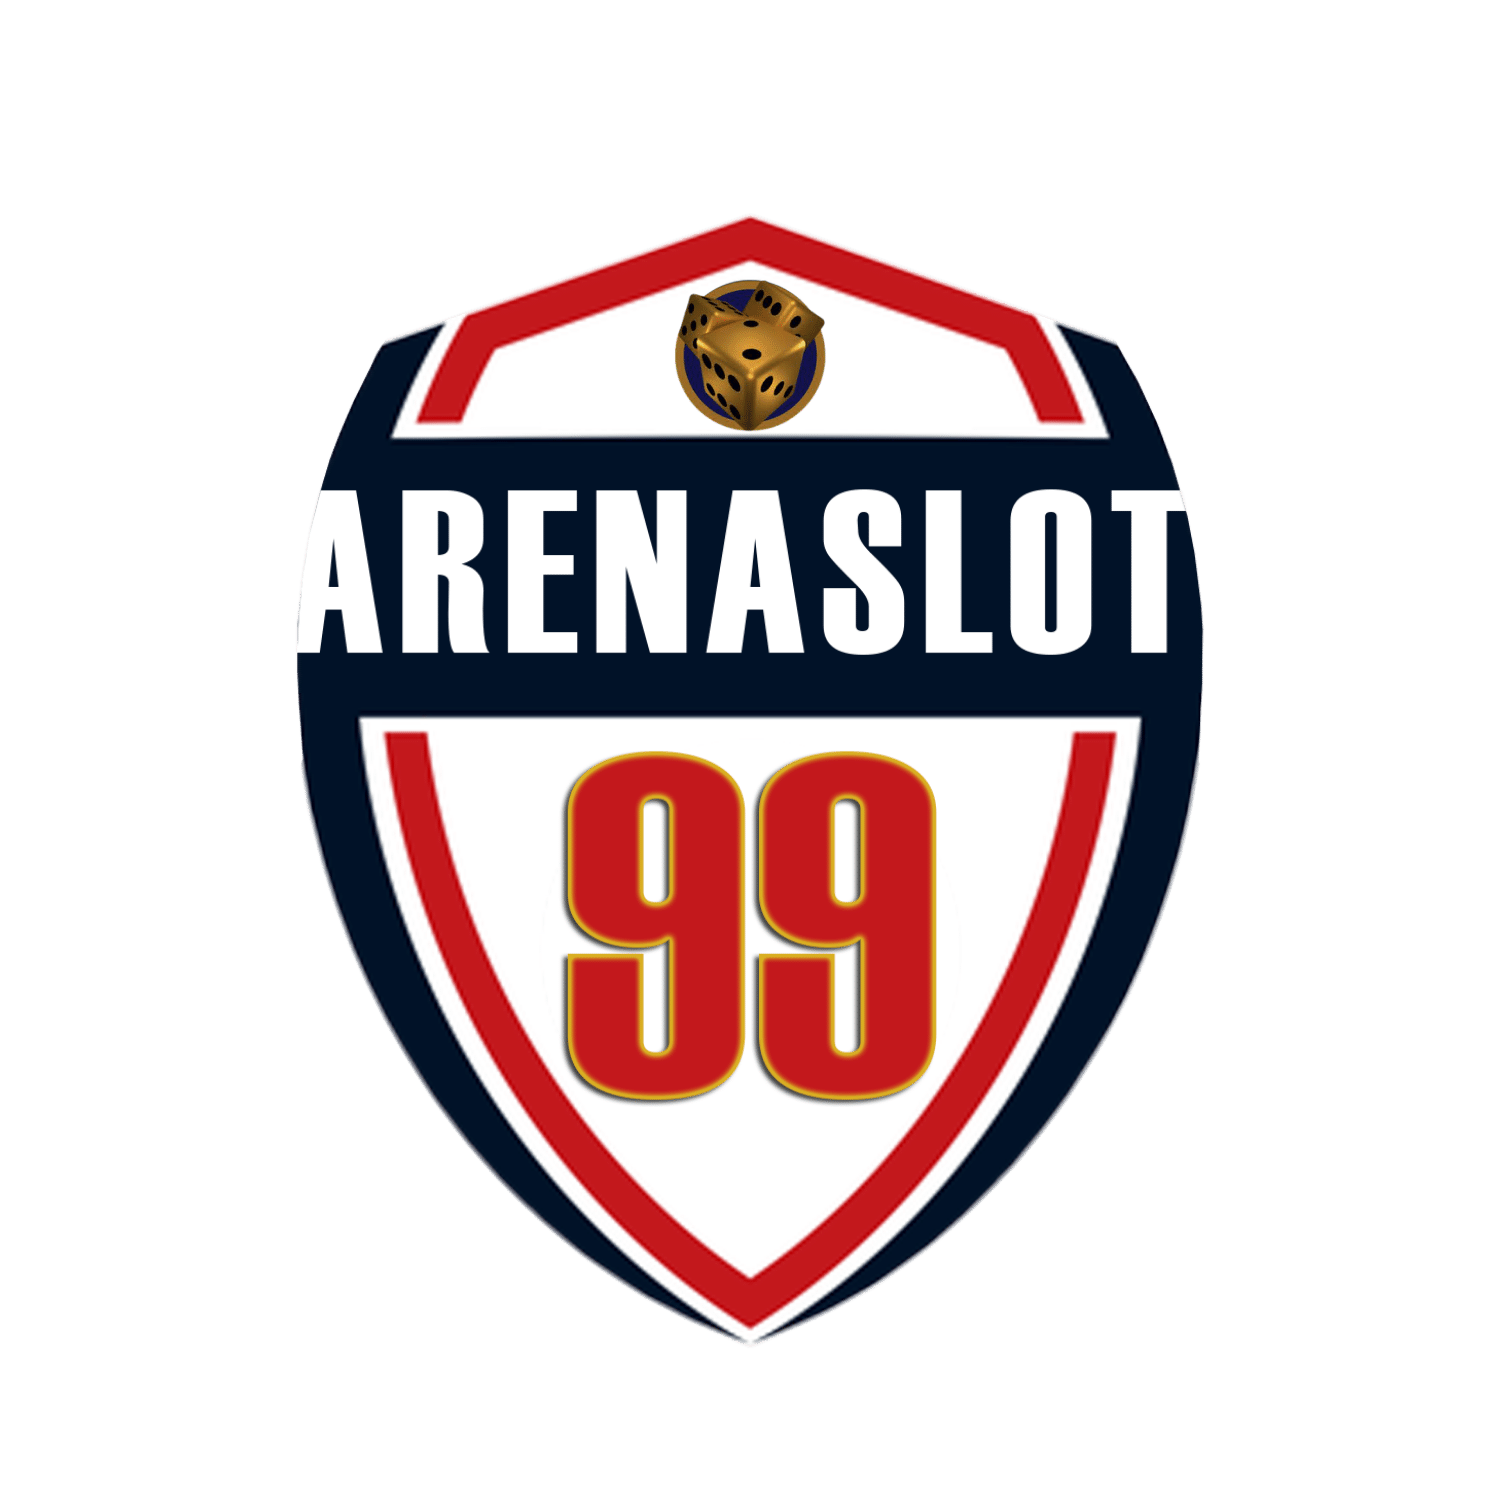 ARENASLOT99 | SITUS SLOT ONLINE TERBAIK DIINDONESIA